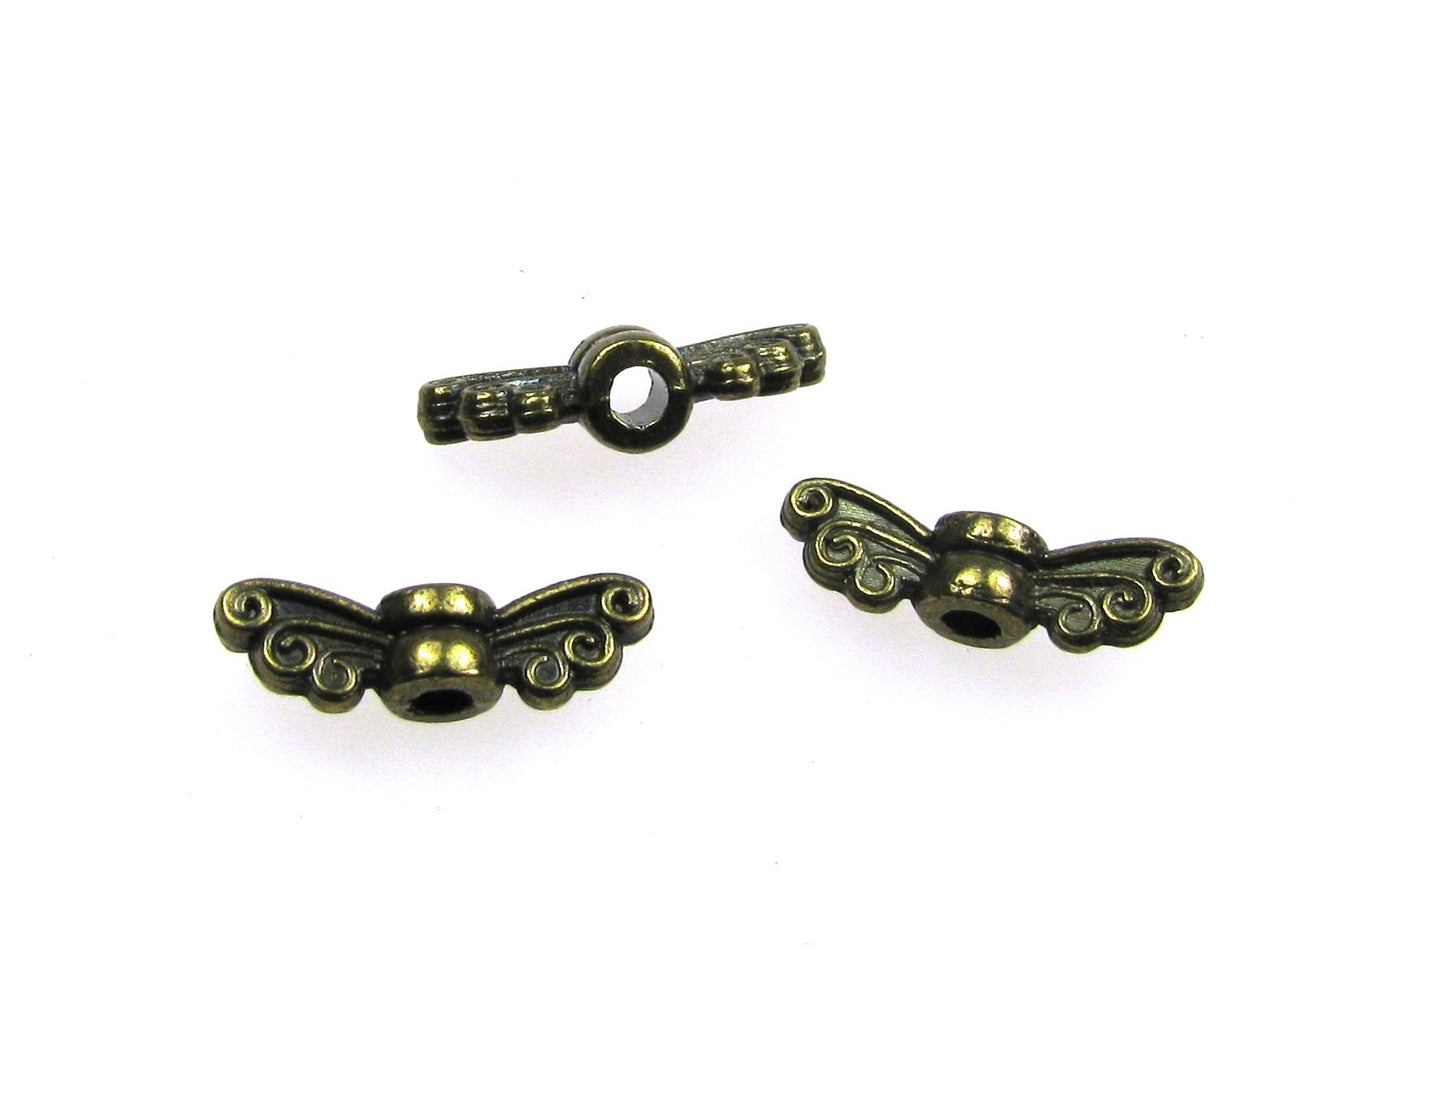 50 Engelsflügel mini 1,35cm bronzefarben Schmetterling, Perlenengel basteln